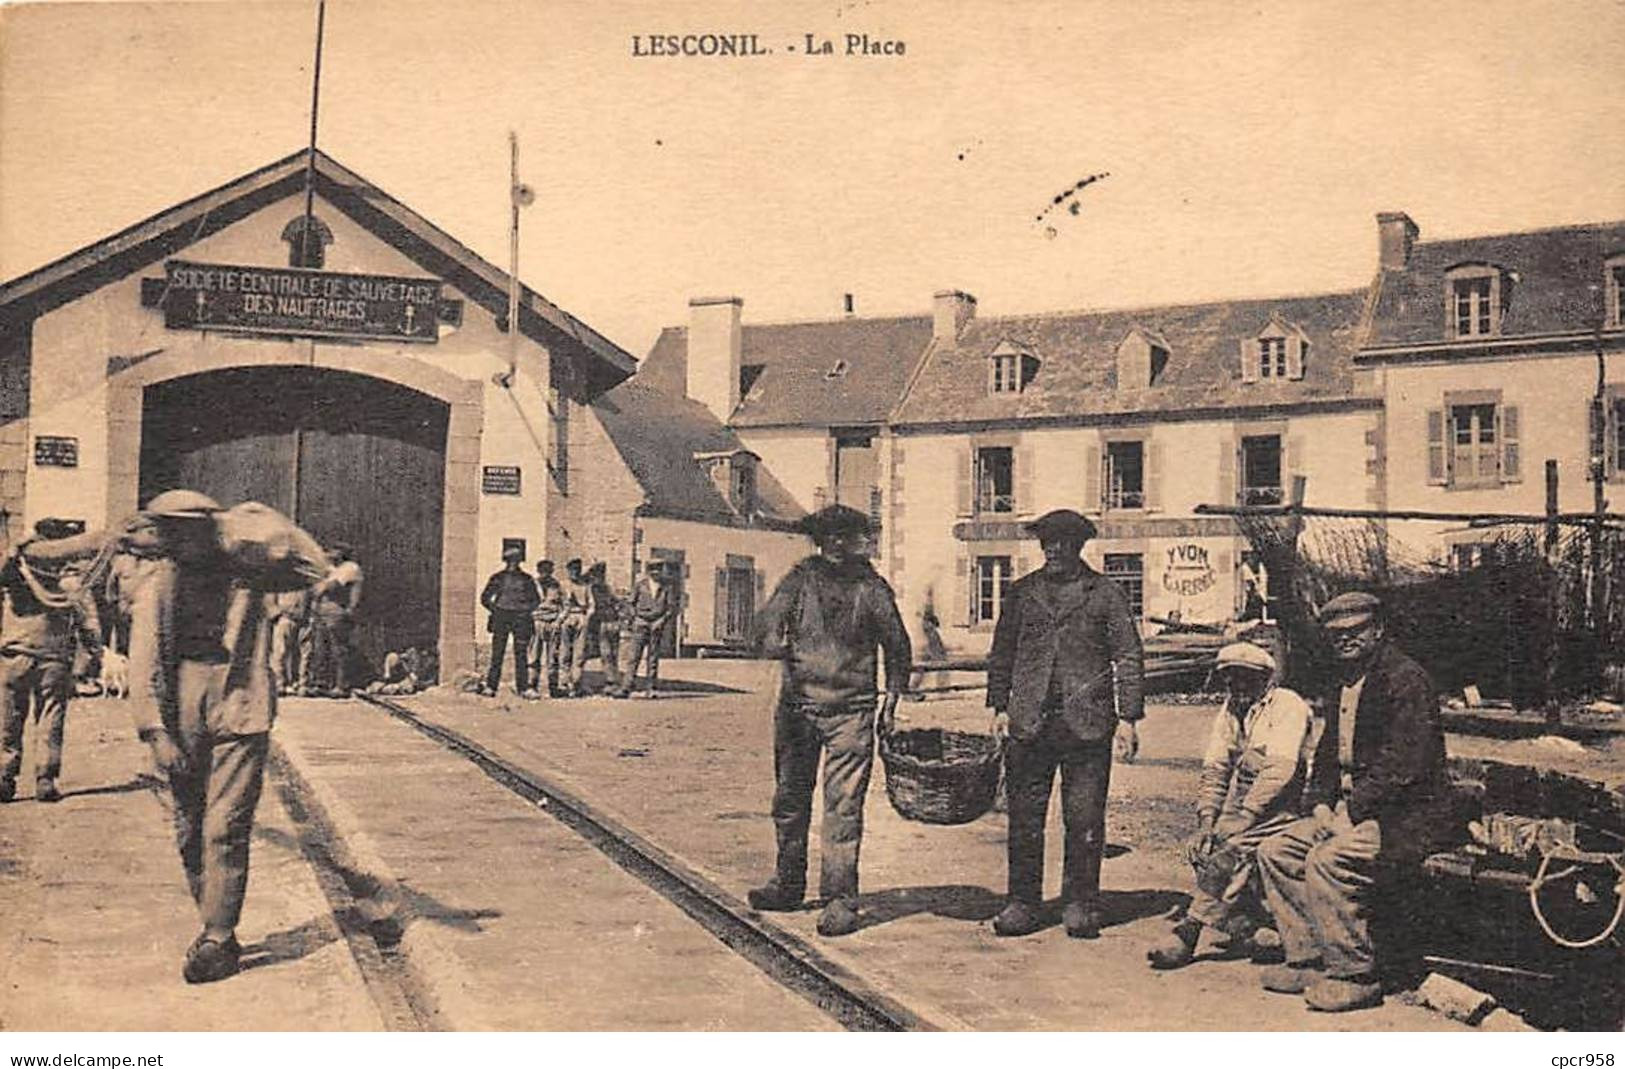 29 - LESCONIL - SAN29582 - La Place - Agriculture - Lesconil